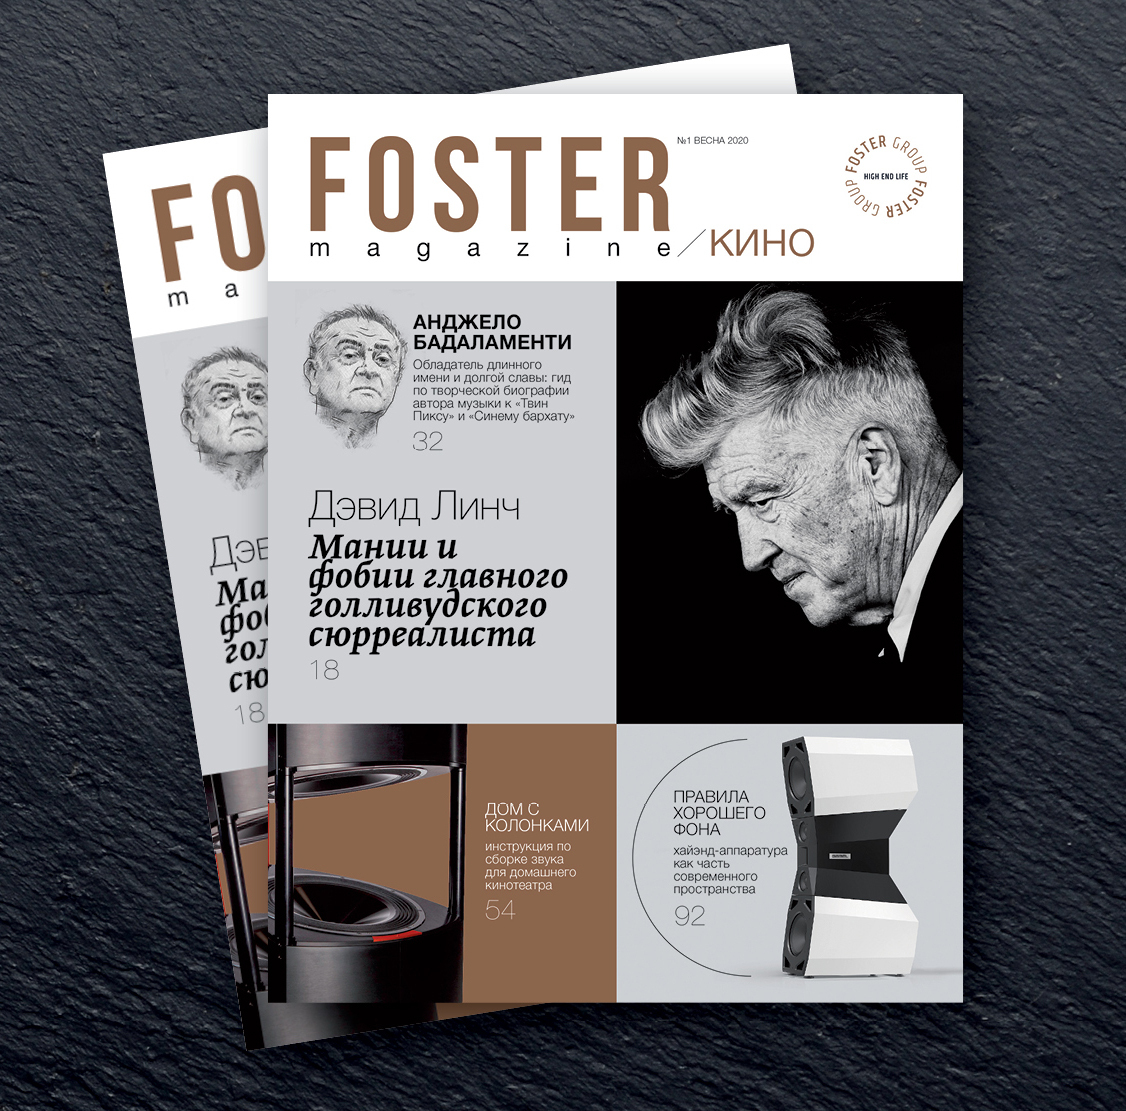 Foster magazine